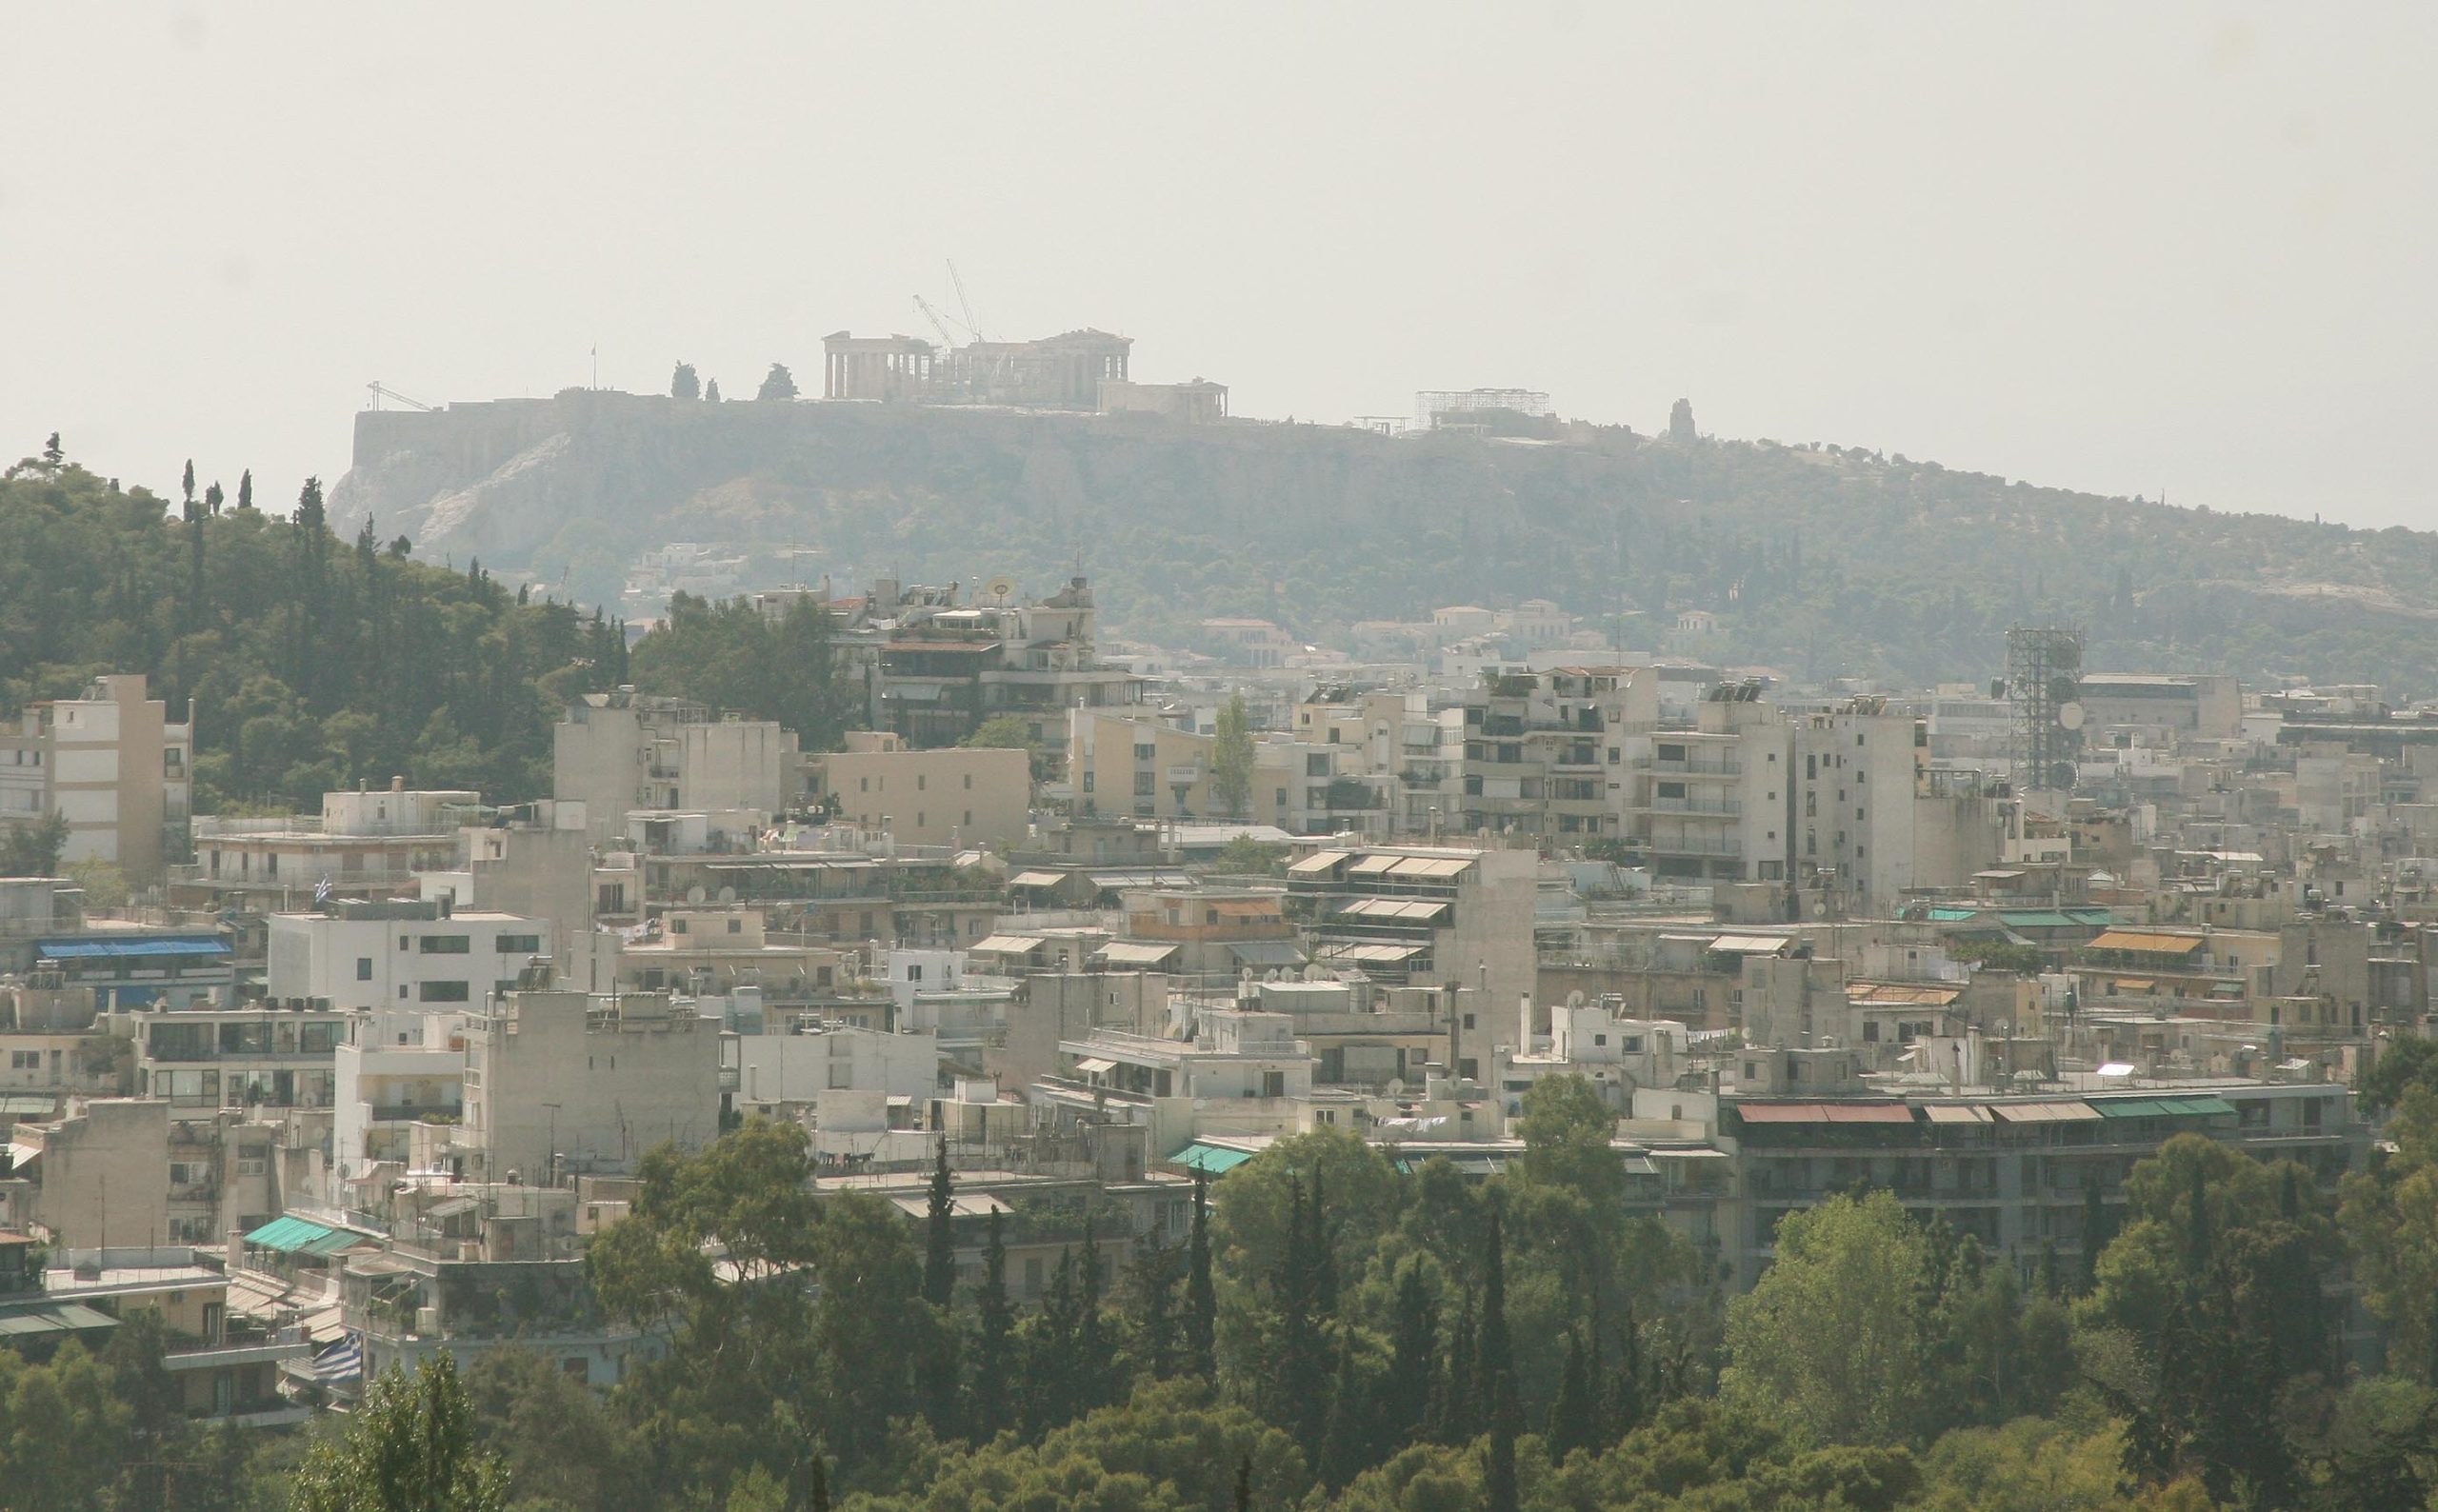 Σημαντική μείωση των τιμών της ρύπανσης της ατμόσφαιρας στην Αθήνα – Μετά τα μέτρα της κυβέρνησης για τον κορωνοϊό